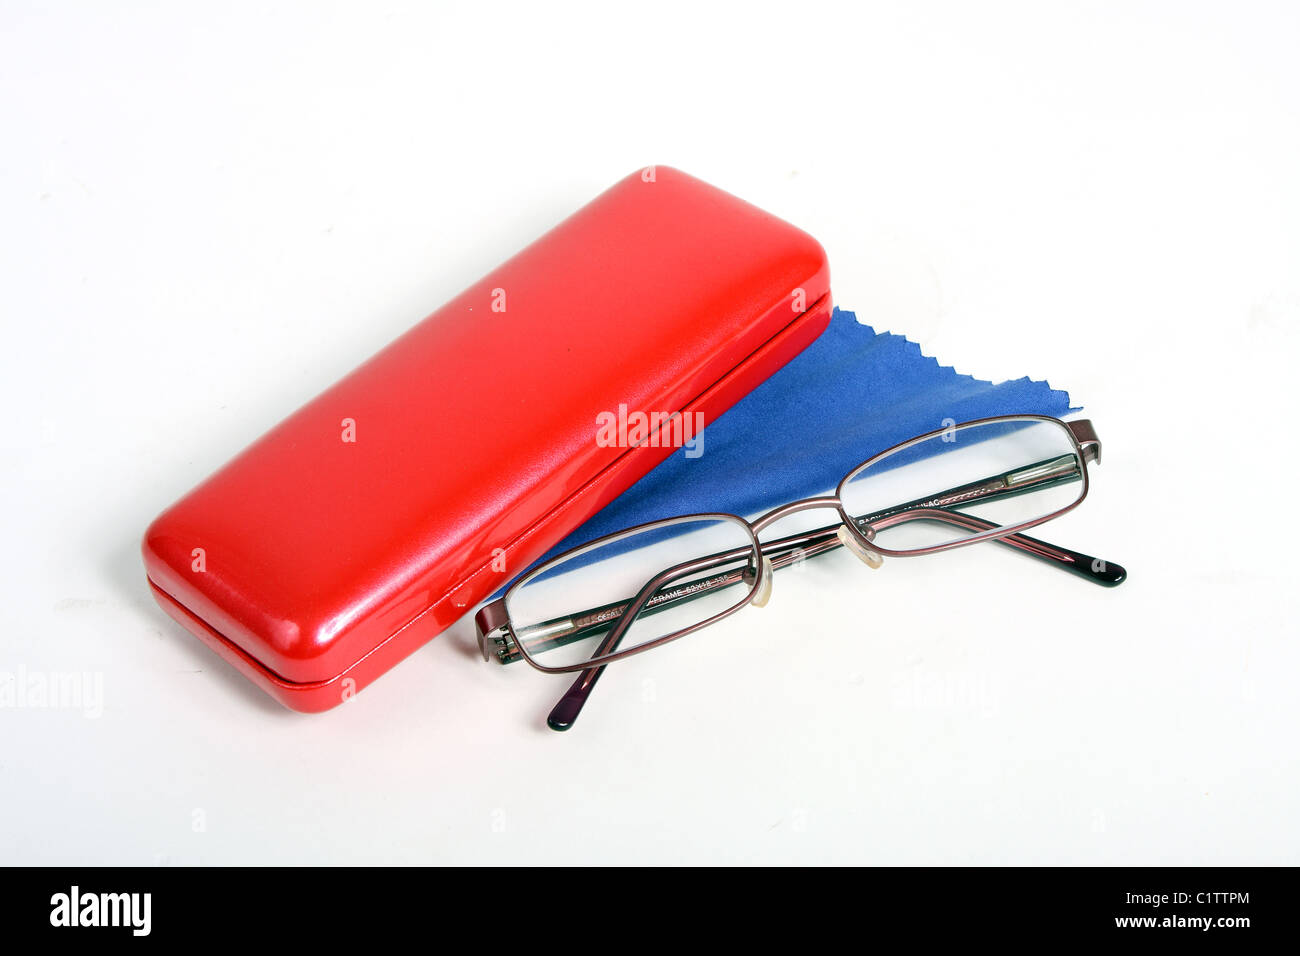 Ein paar von Burgund Lesebrille auf einem weißen ausgeschnitten Hintergrund mit einem roten Brillenetui und blau Reinigungstuch. Stockfoto